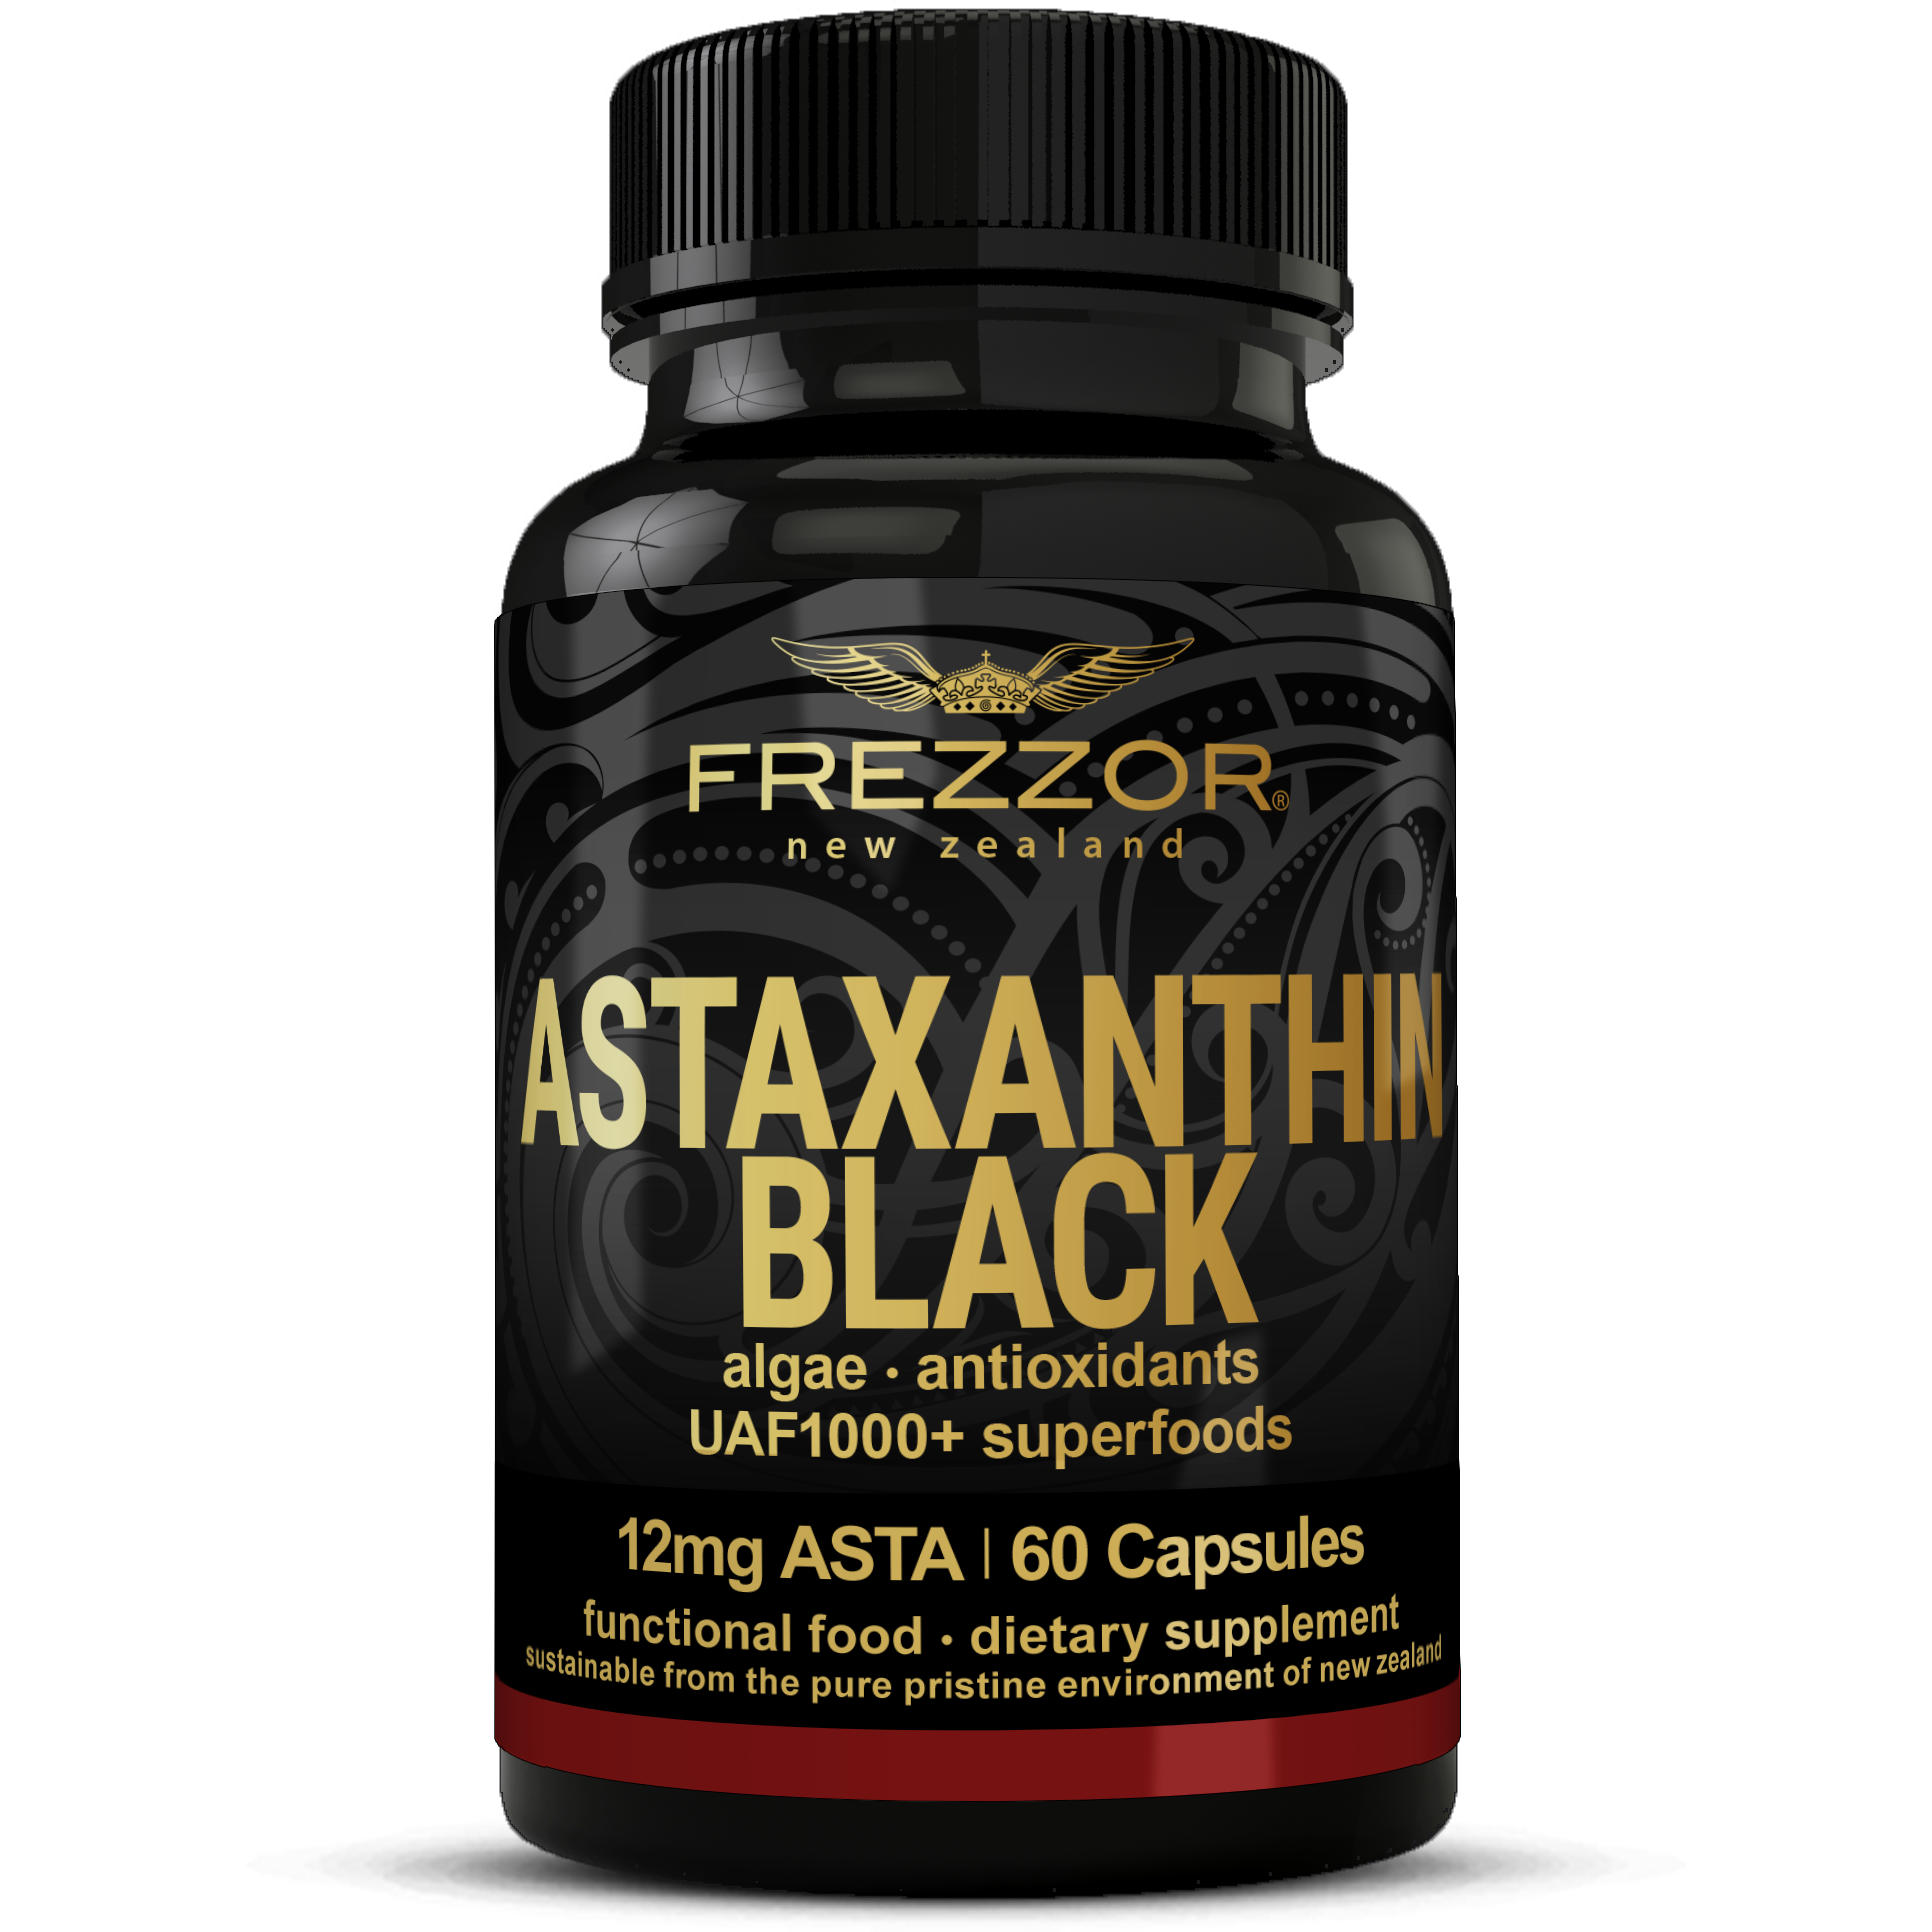 Astaxanthin Black  FREZZOR Best Natural Astaxanthin Capsules Supplement Brand NZ 